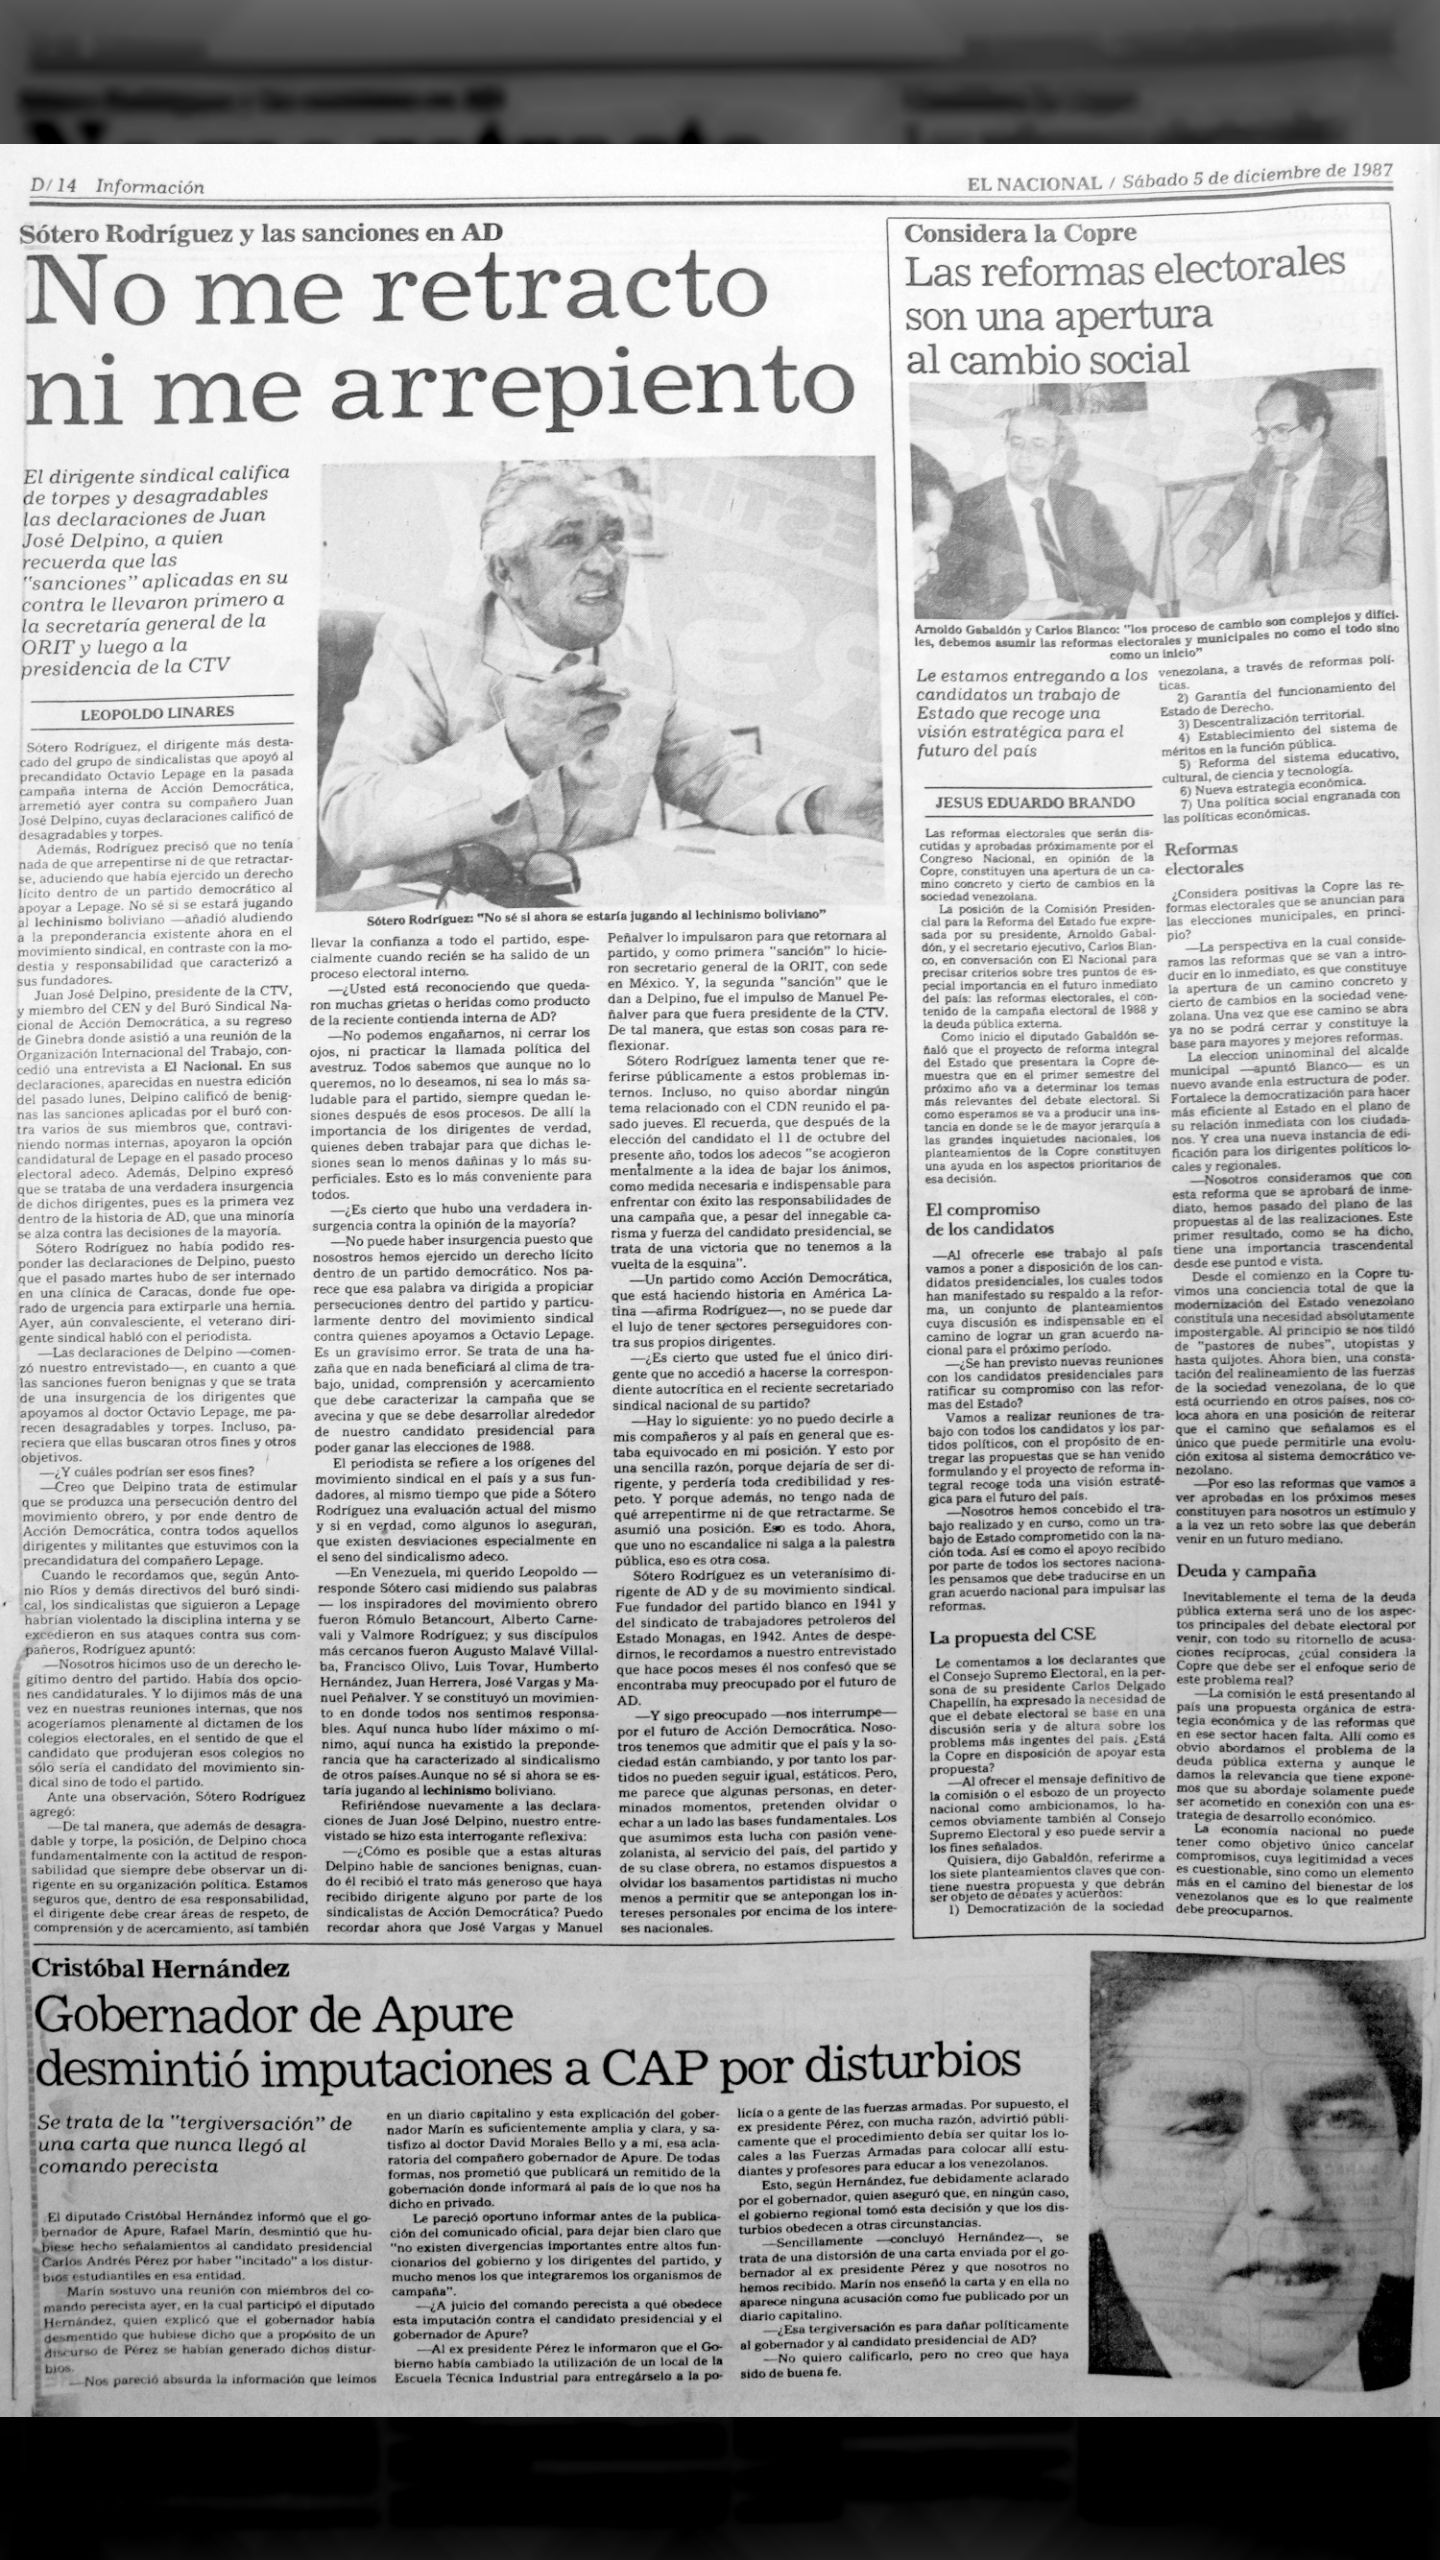 Sótero Rodríguez y las sanciones de AD: No me retracto ni me arrepiento (El Nacional, sábado 5 de diciembre de 1987)